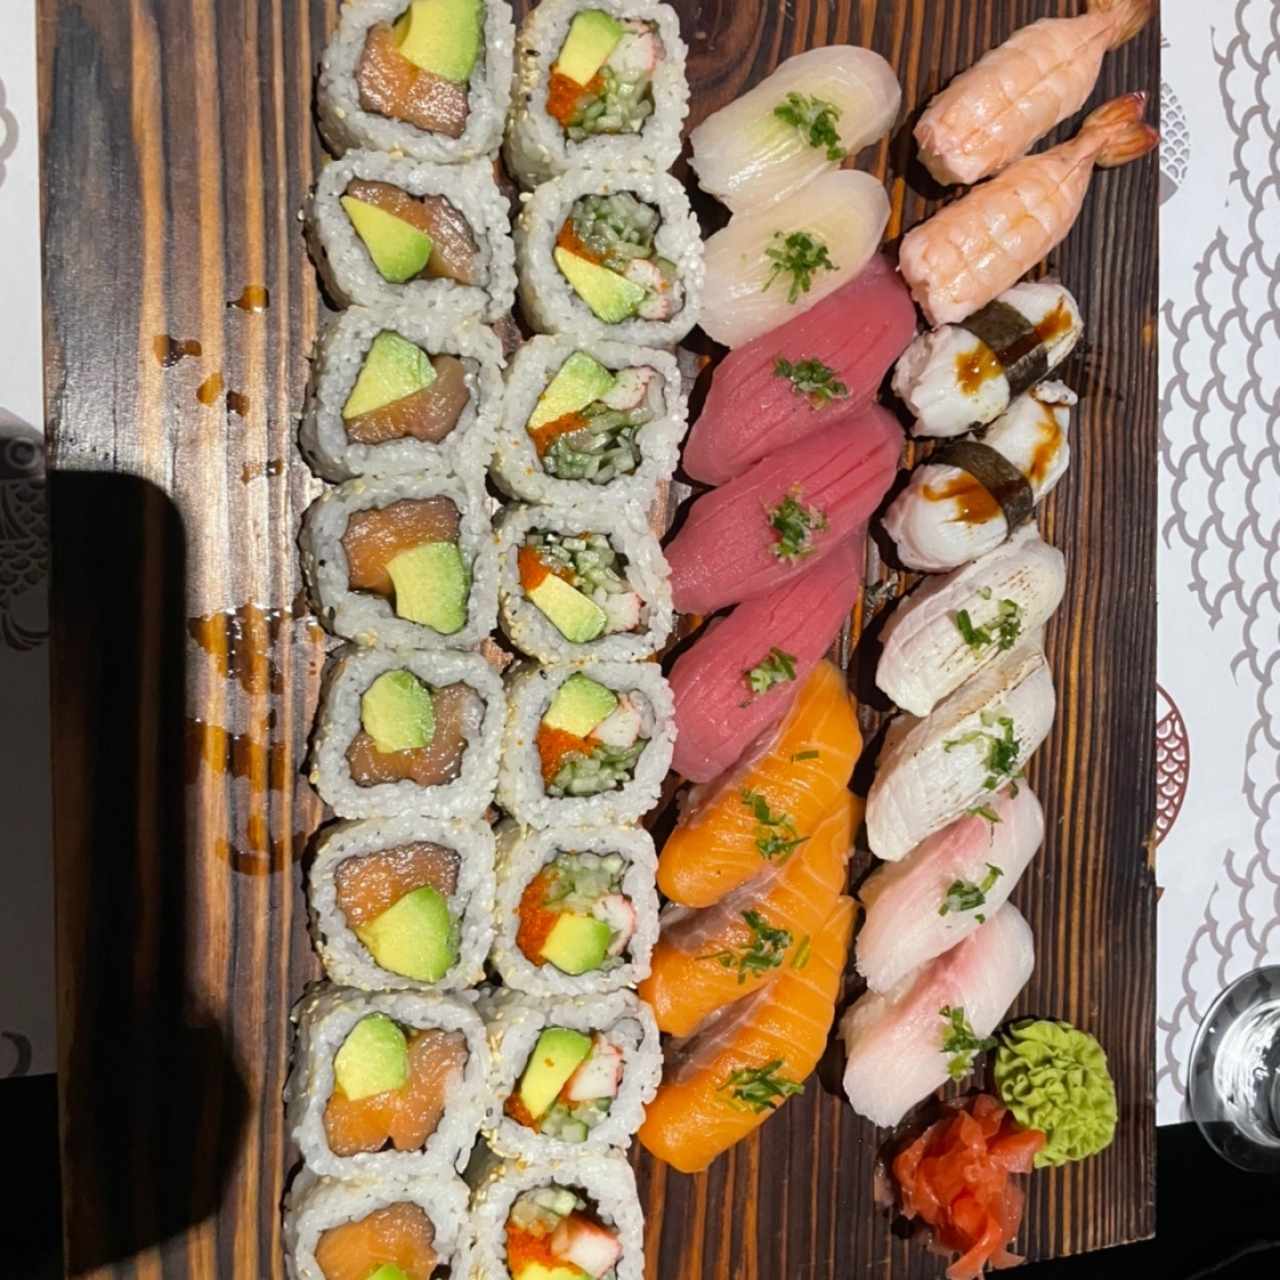 Sushi combo